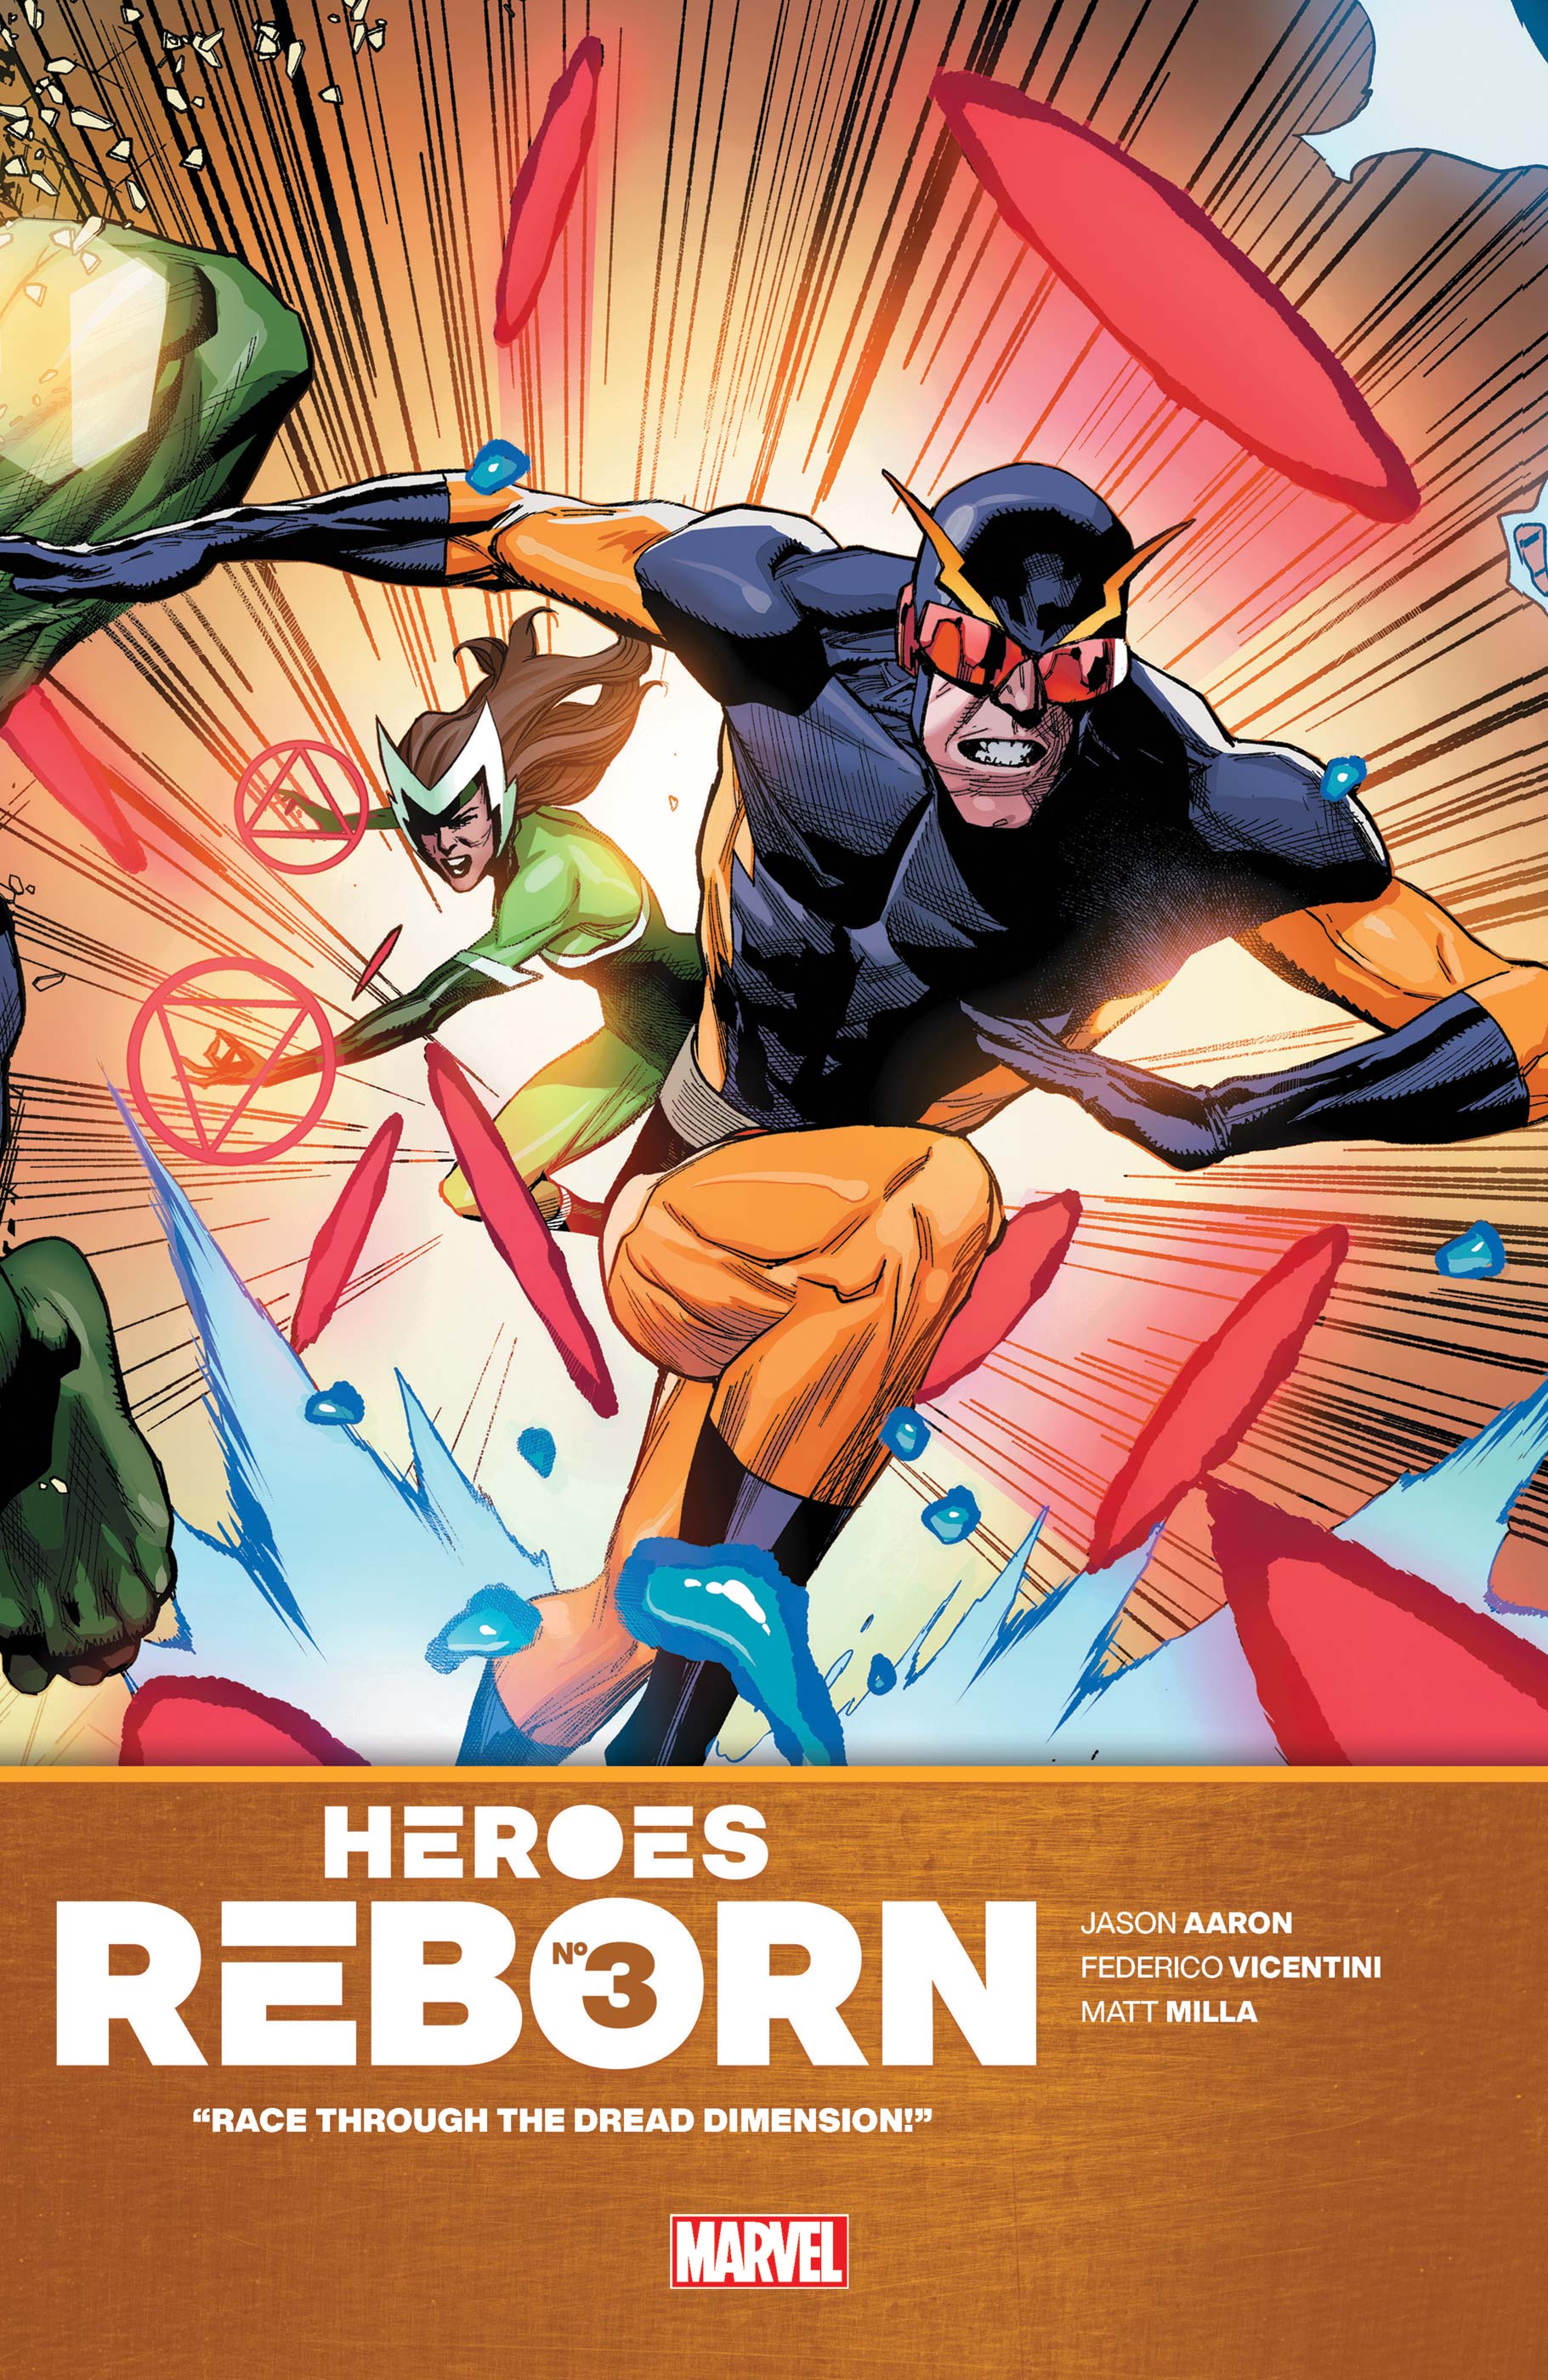 Heroes Reborn (2021) #3